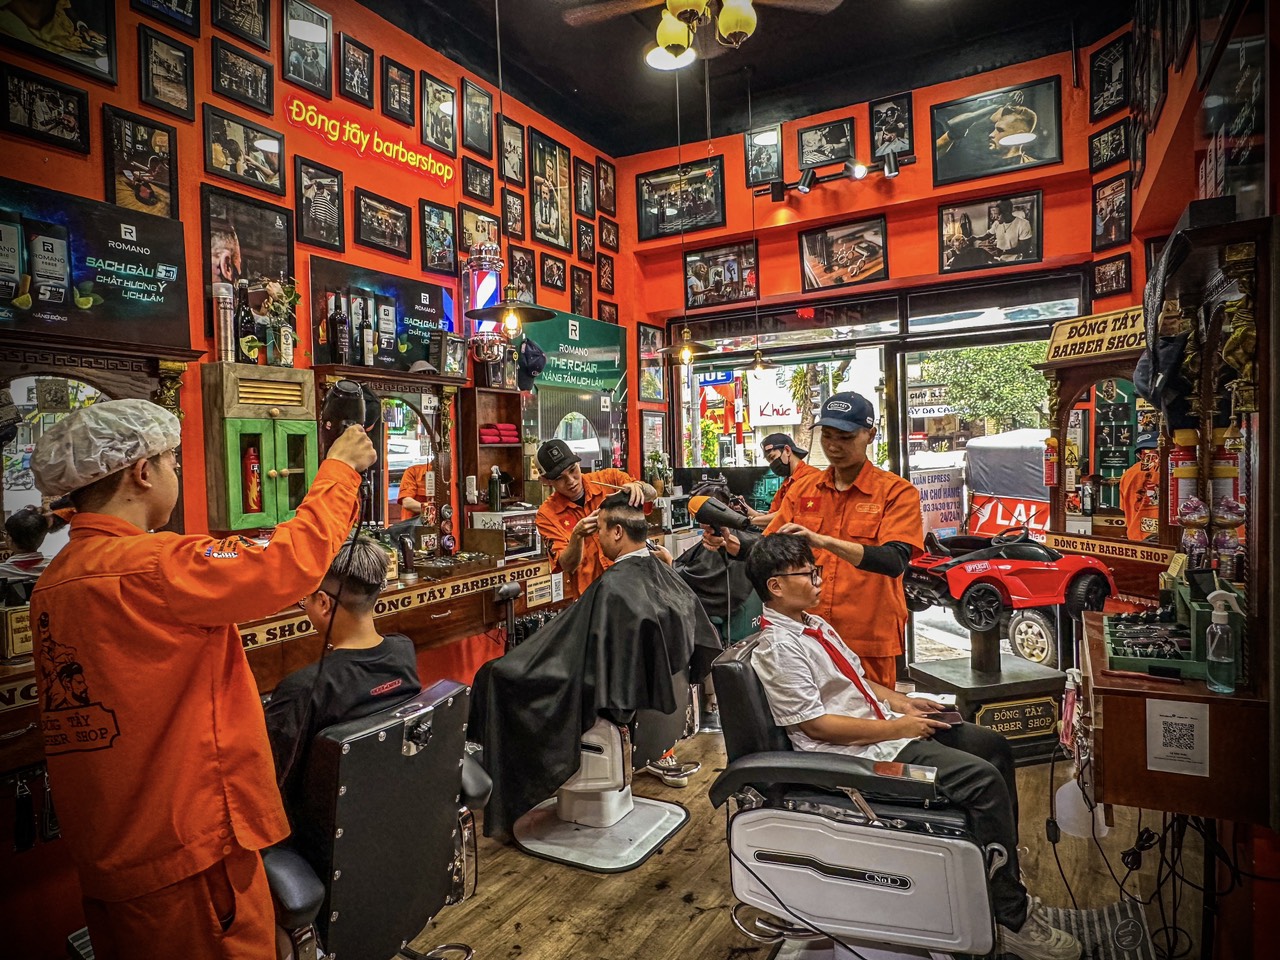 Tiệm cắt tóc dành cho sinh viên tại Hà Nội - Đông Tây Barbershop